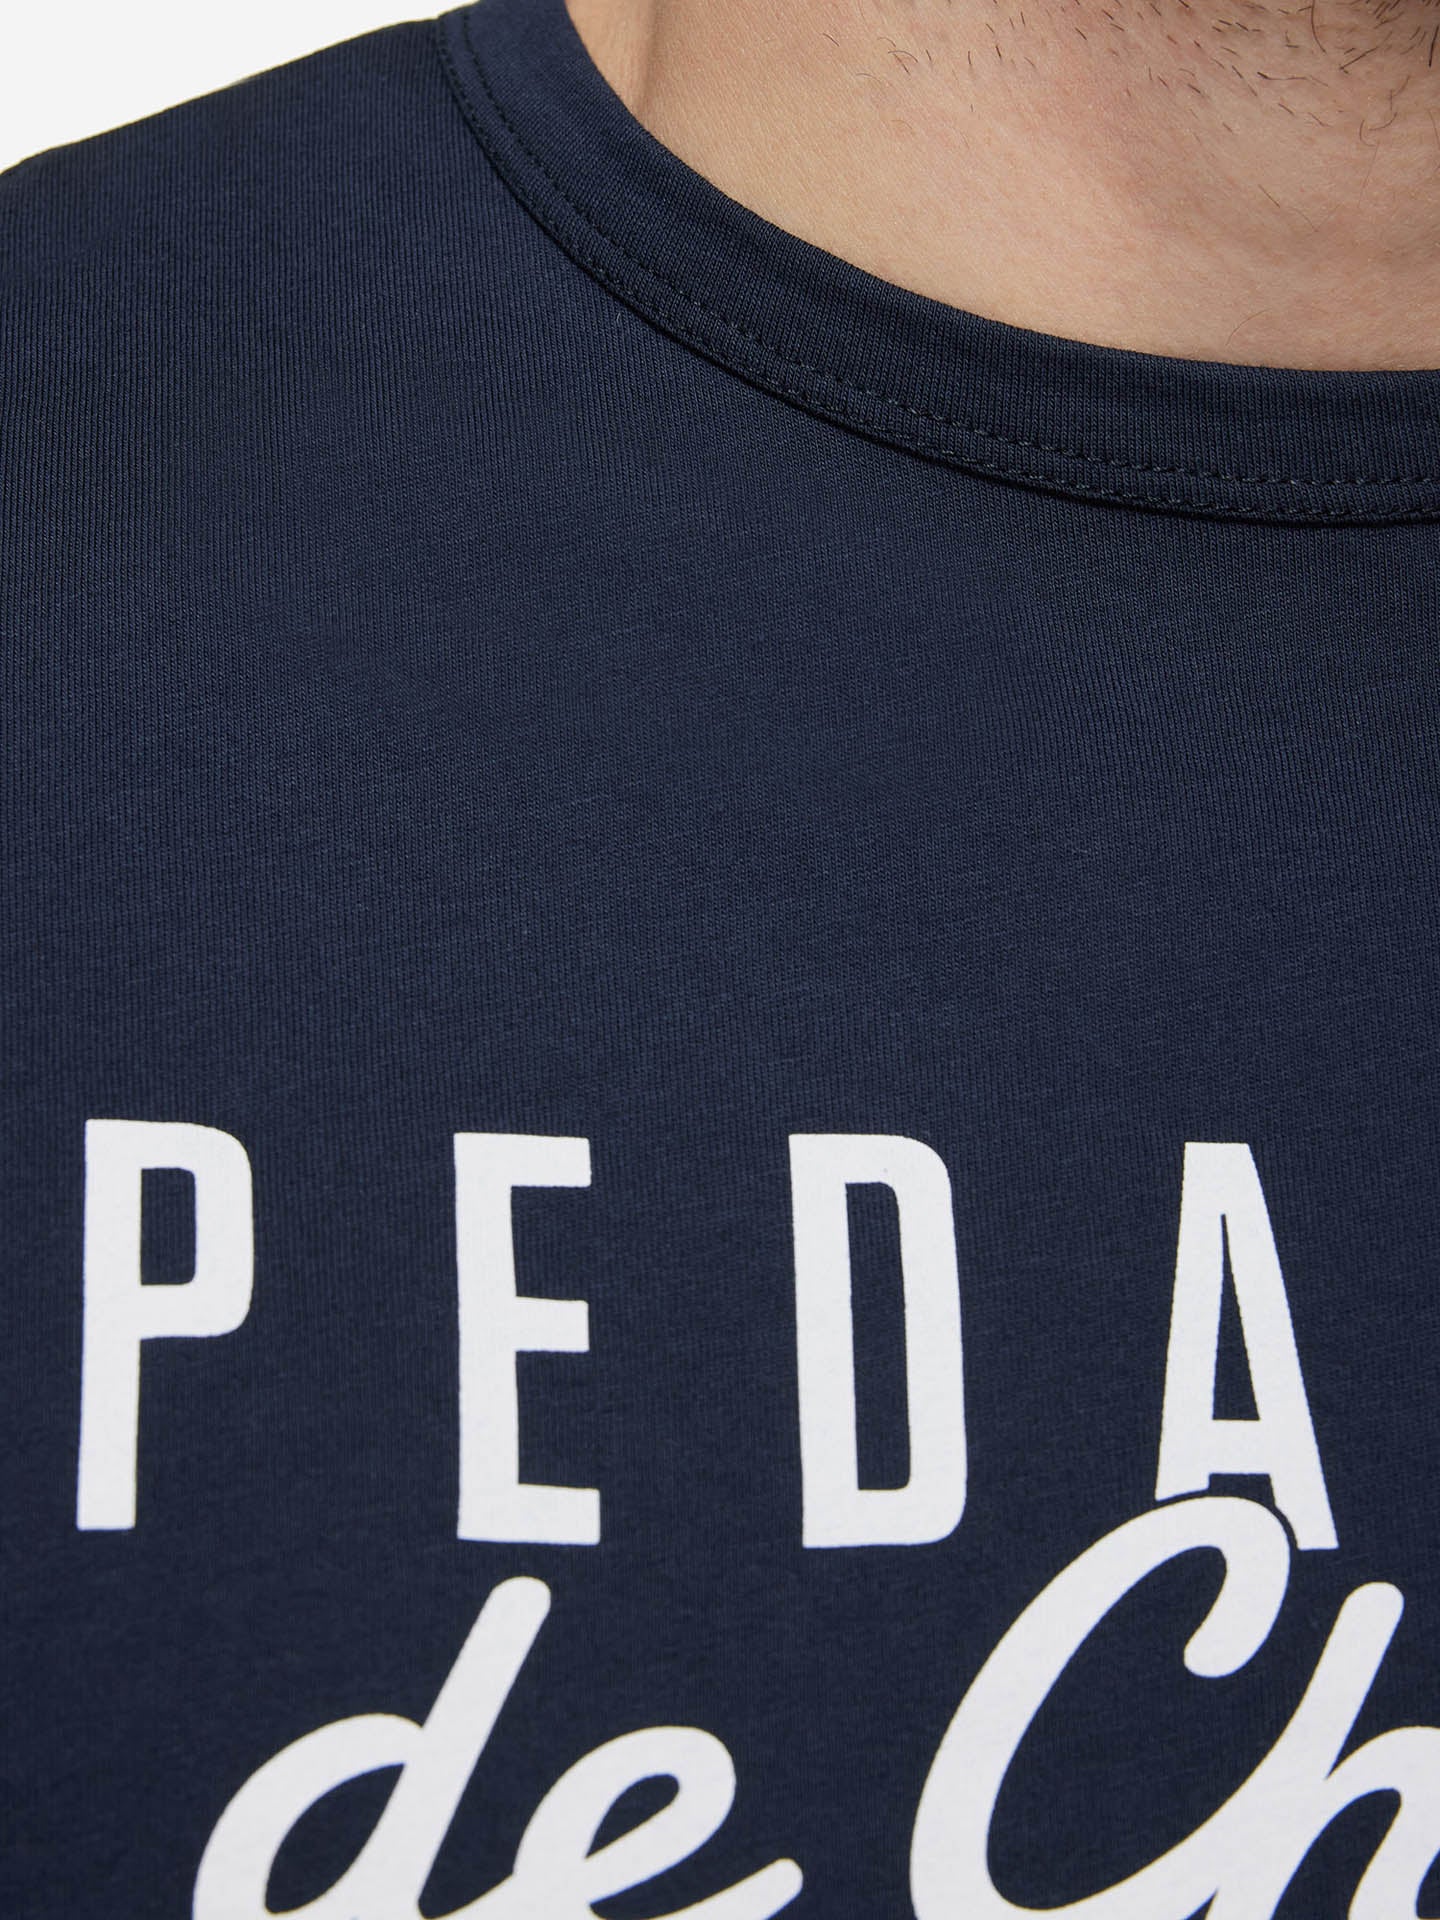 Pedaleur de Charme - T-shirt -  La Machine Cycle Club.